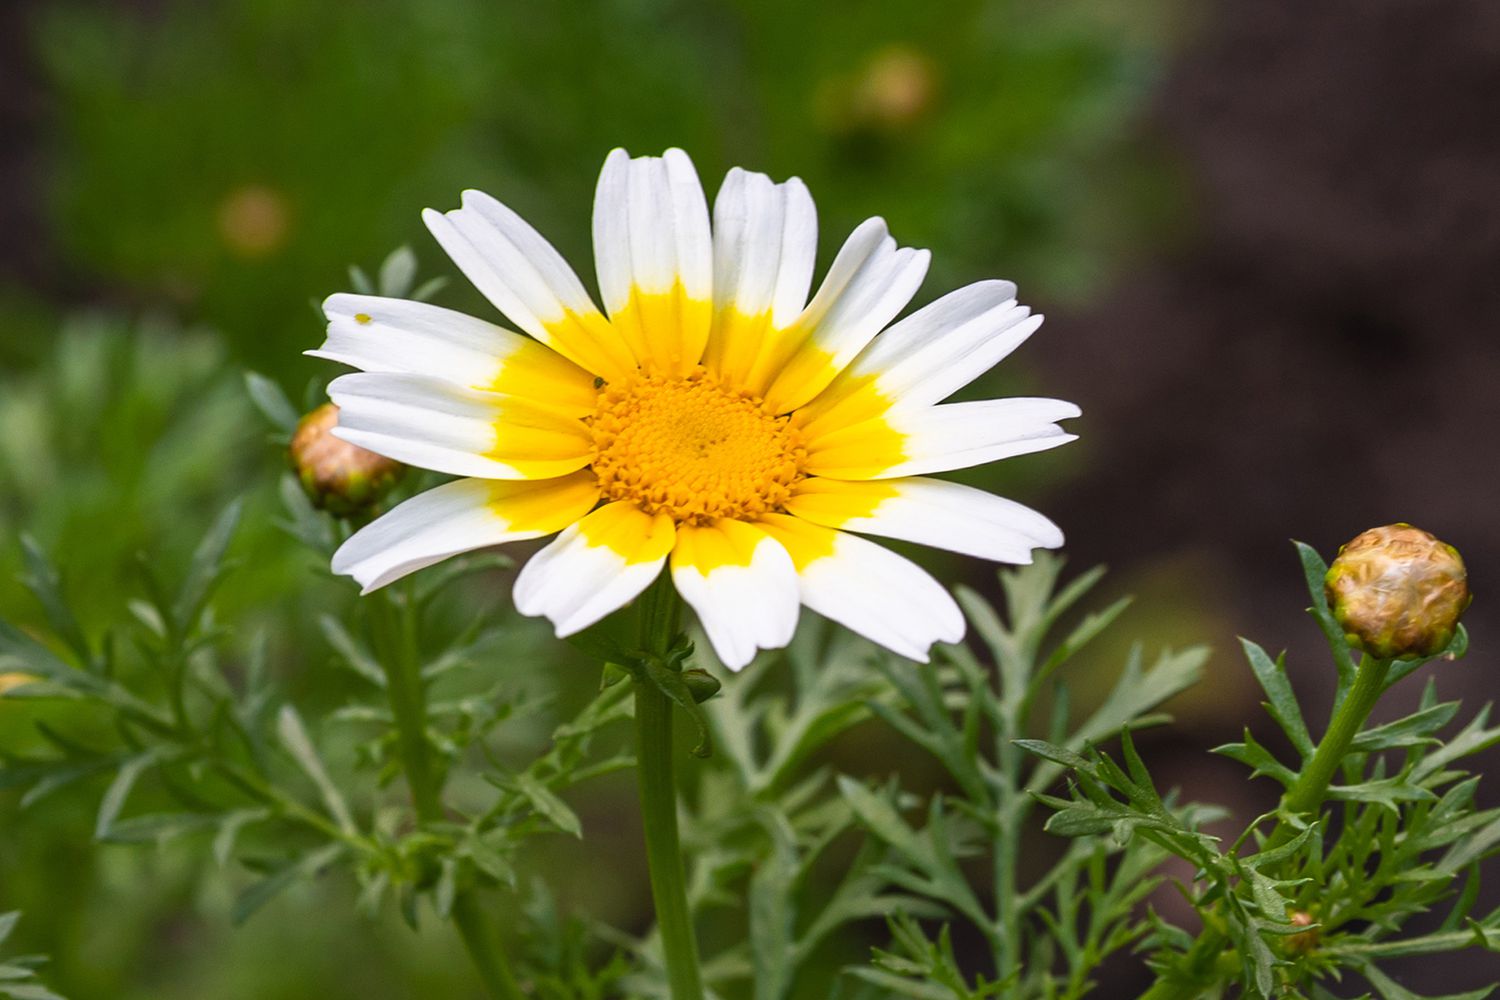 Kronenblume gelbe und weiße strahlende Blüte in Nahaufnahme